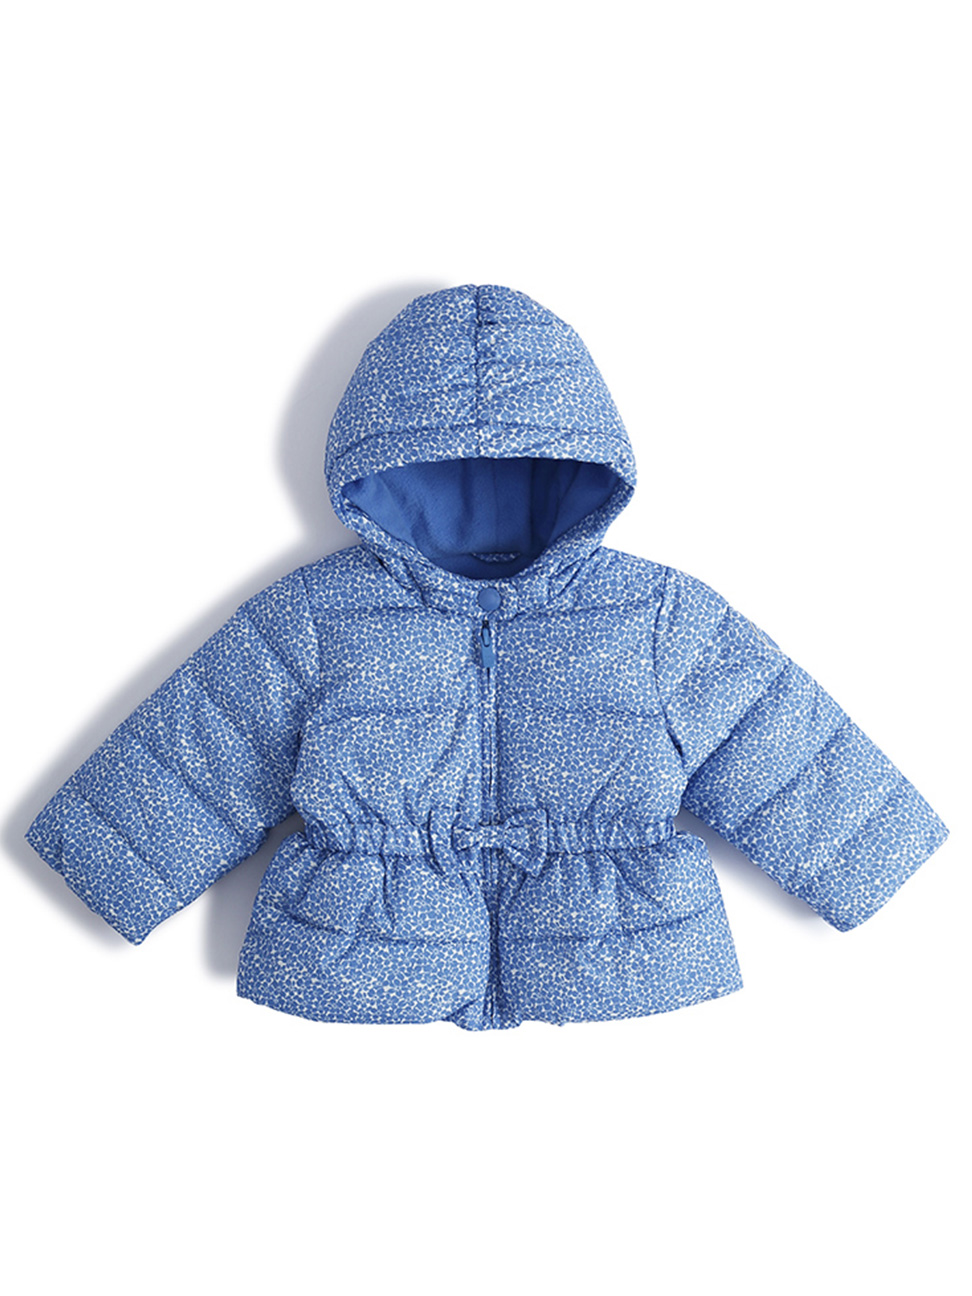 嬰兒裝|舒適保暖長袖拉鍊鋪棉外套-摩爾藍色